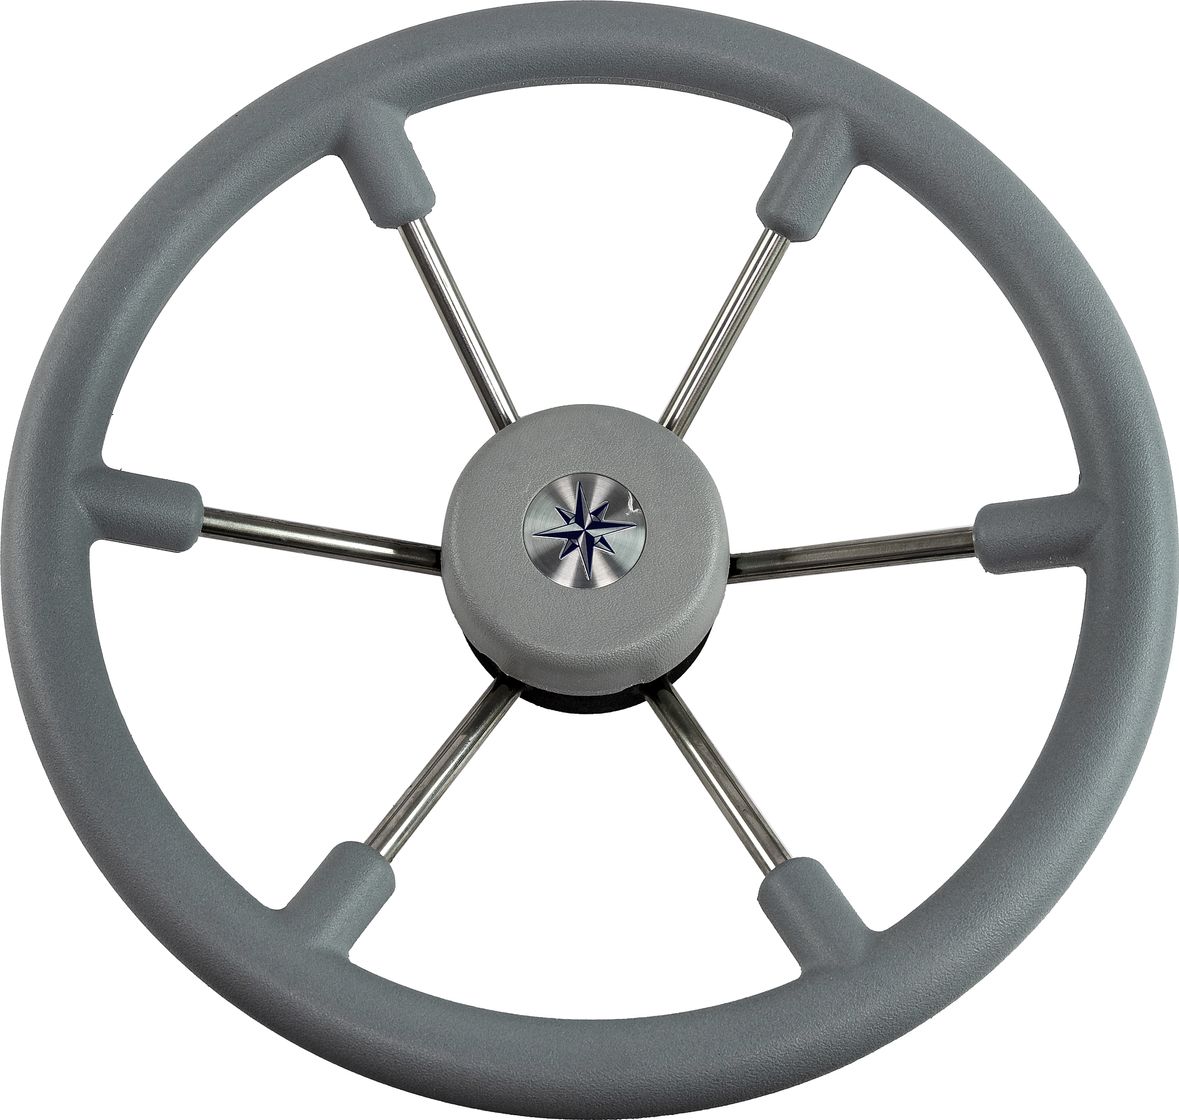 Рулевое колесо LEADER TANEGUM серый обод серебряные спицы д. 360 мм VN7360-03 рулевое колесо leader tanegum белый обод серебряные спицы д 400 мм vn7400 08